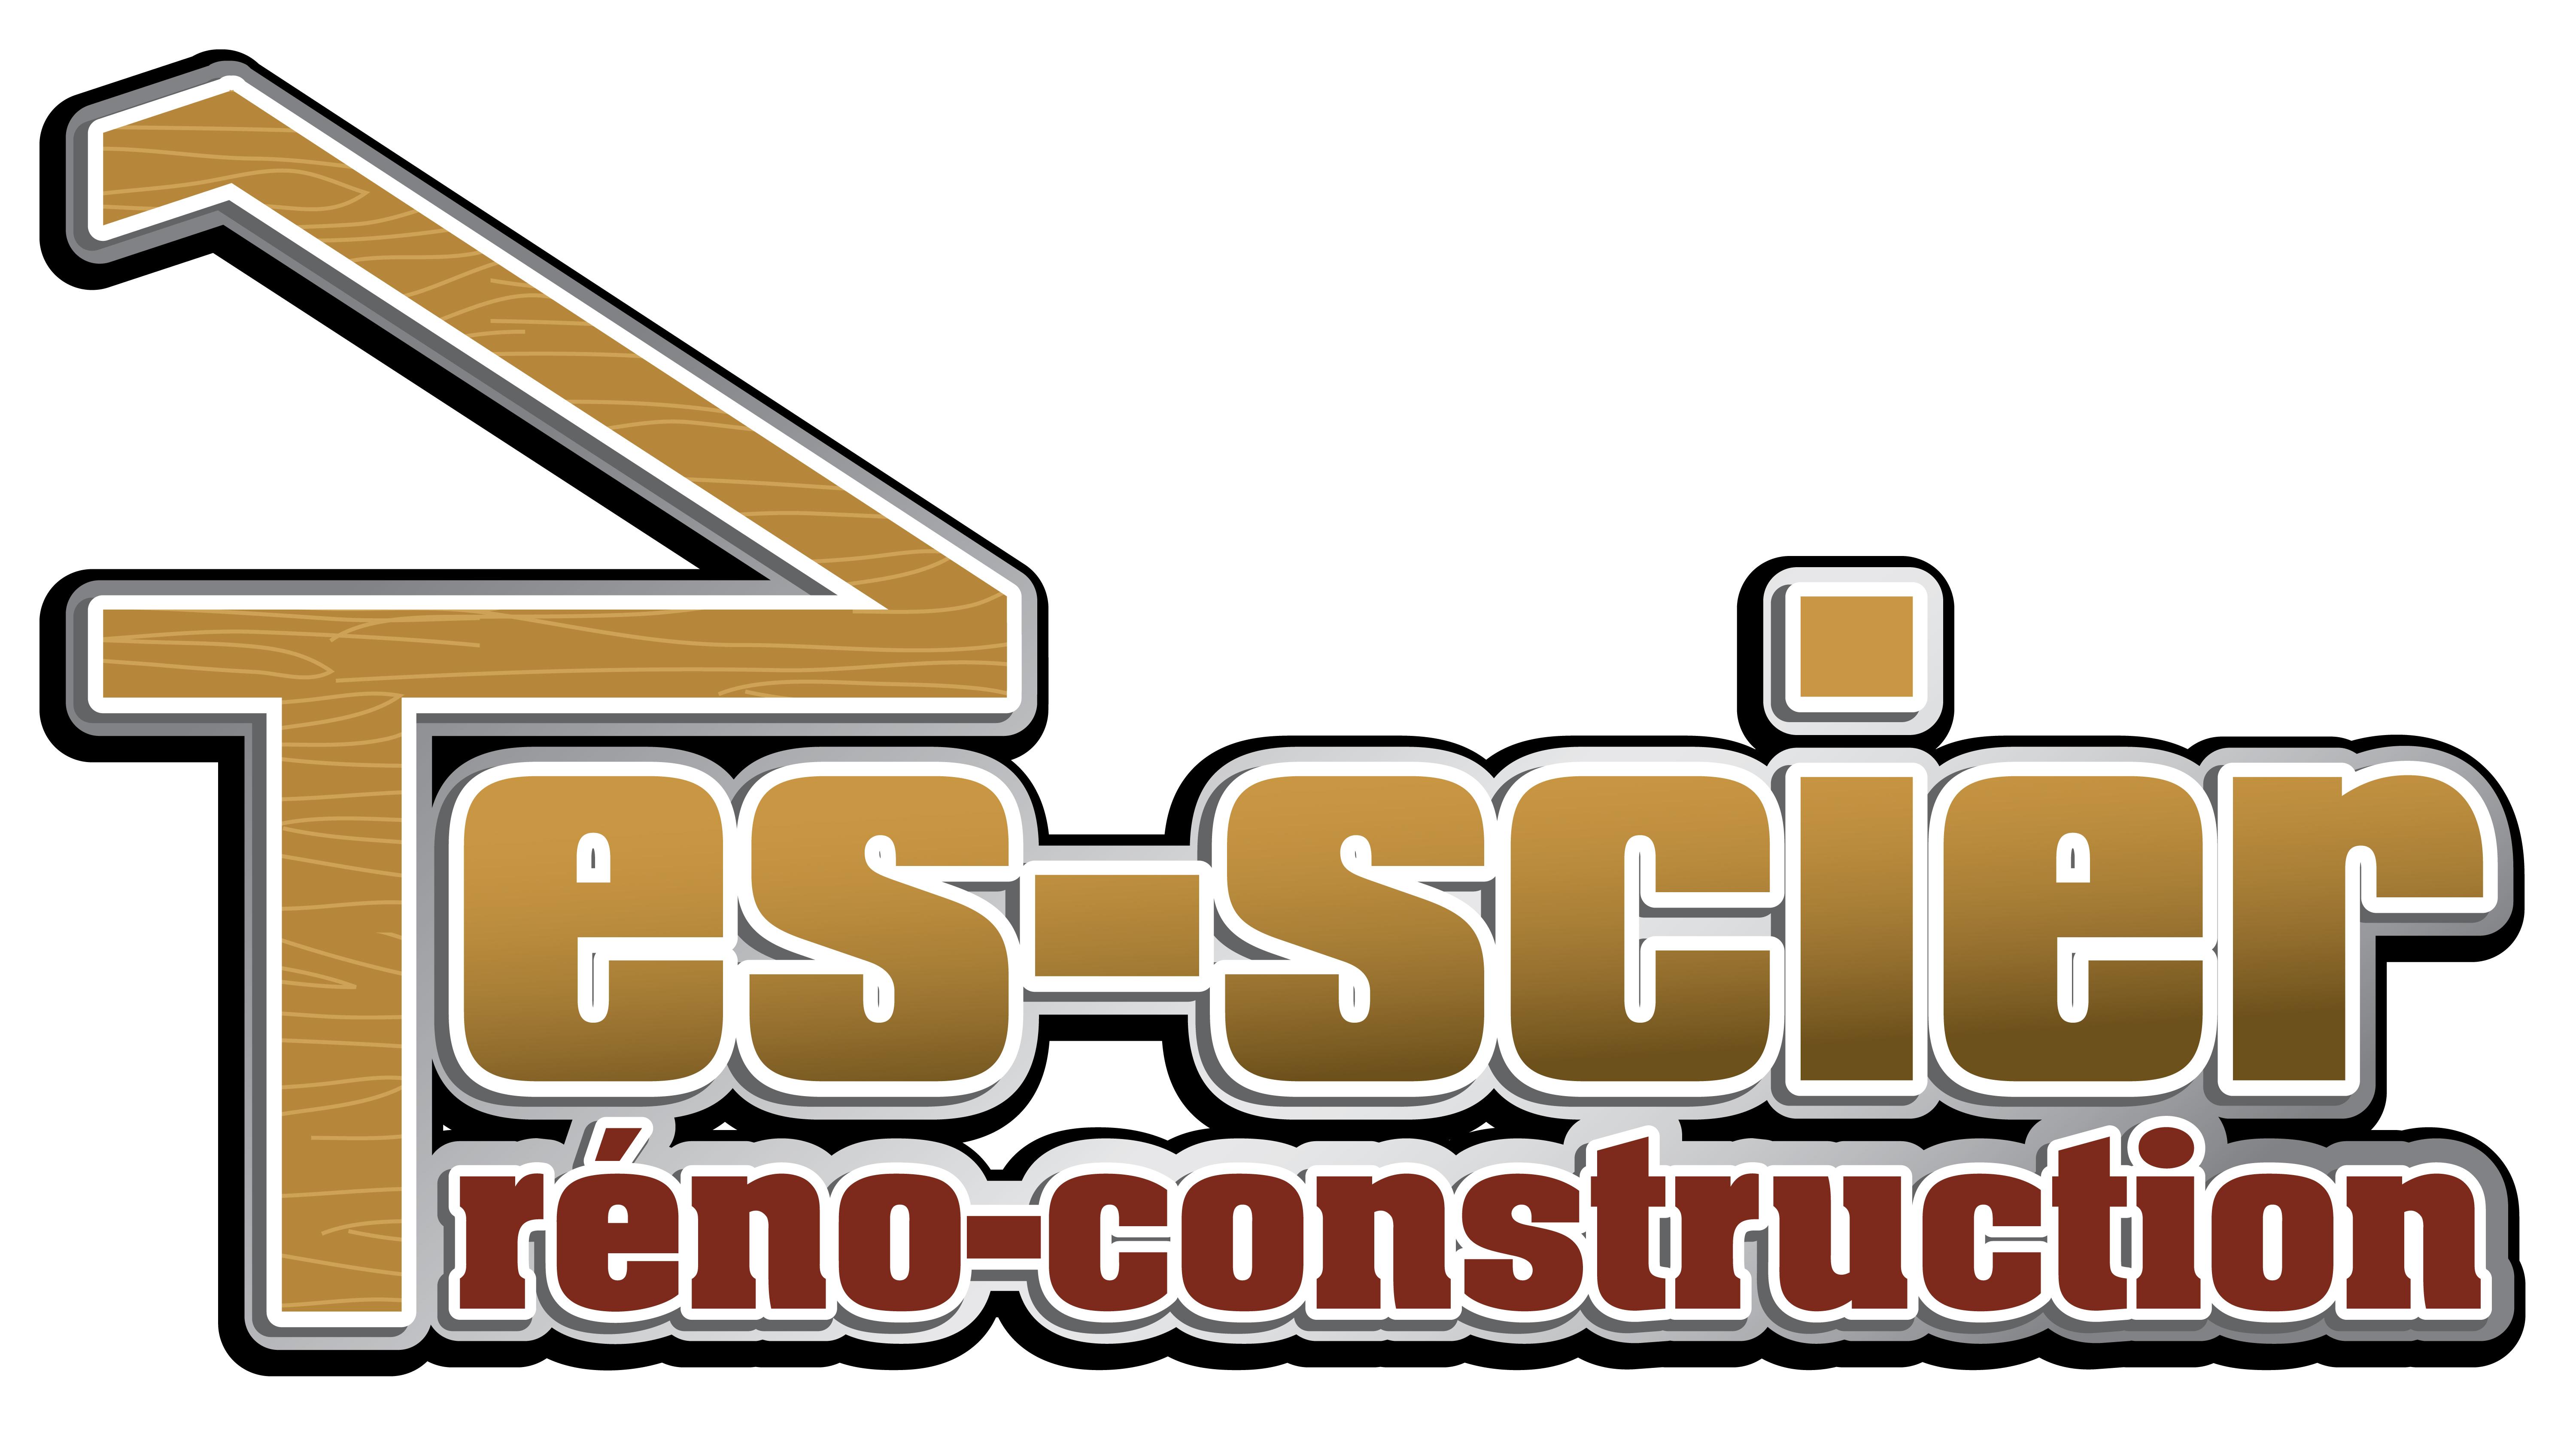 Tes-Scier reno-construction